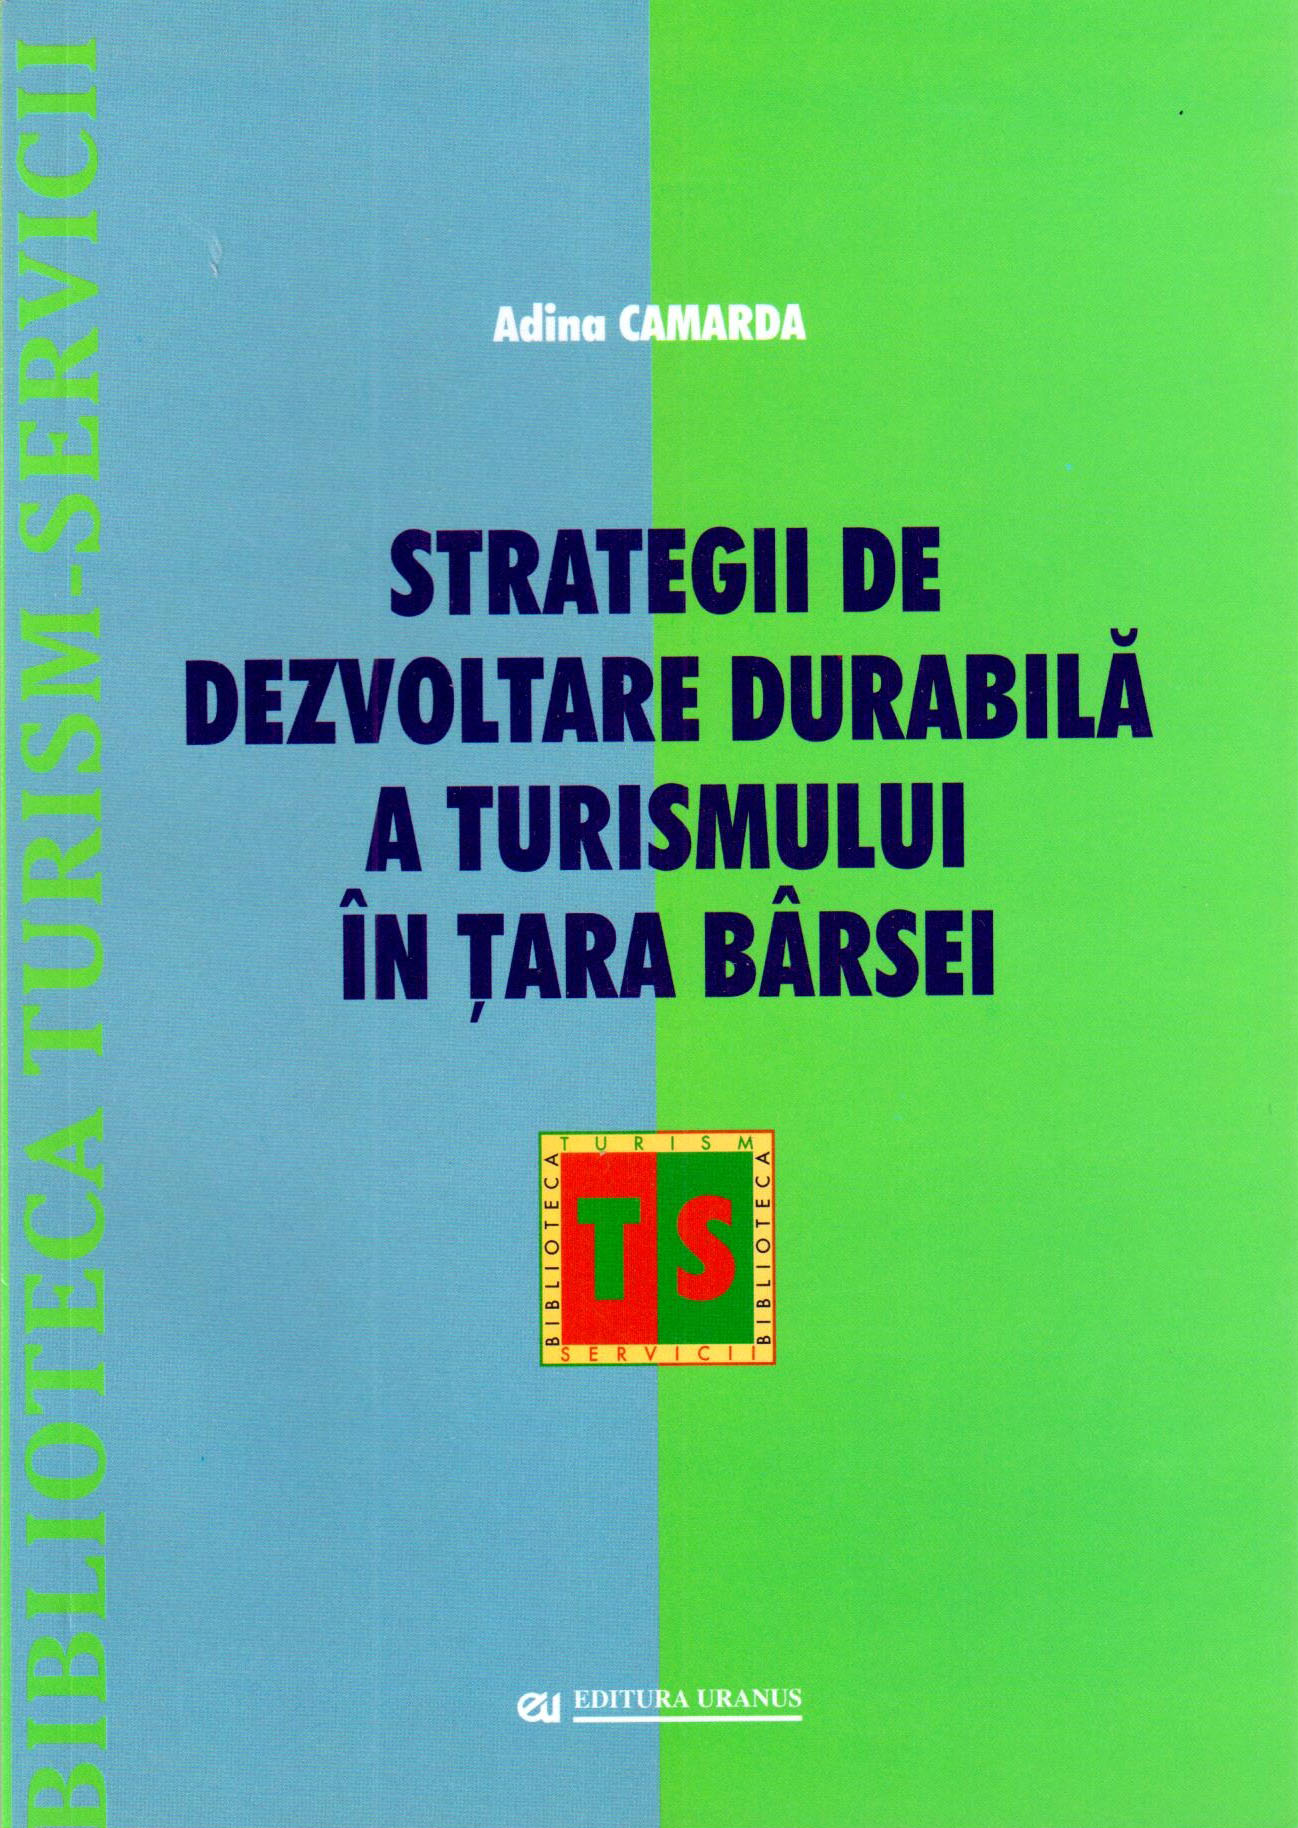 PDF Strategii de dezvoltare durabila a turismului in Tara Barsei | Adina Camarda carturesti.ro Business si economie